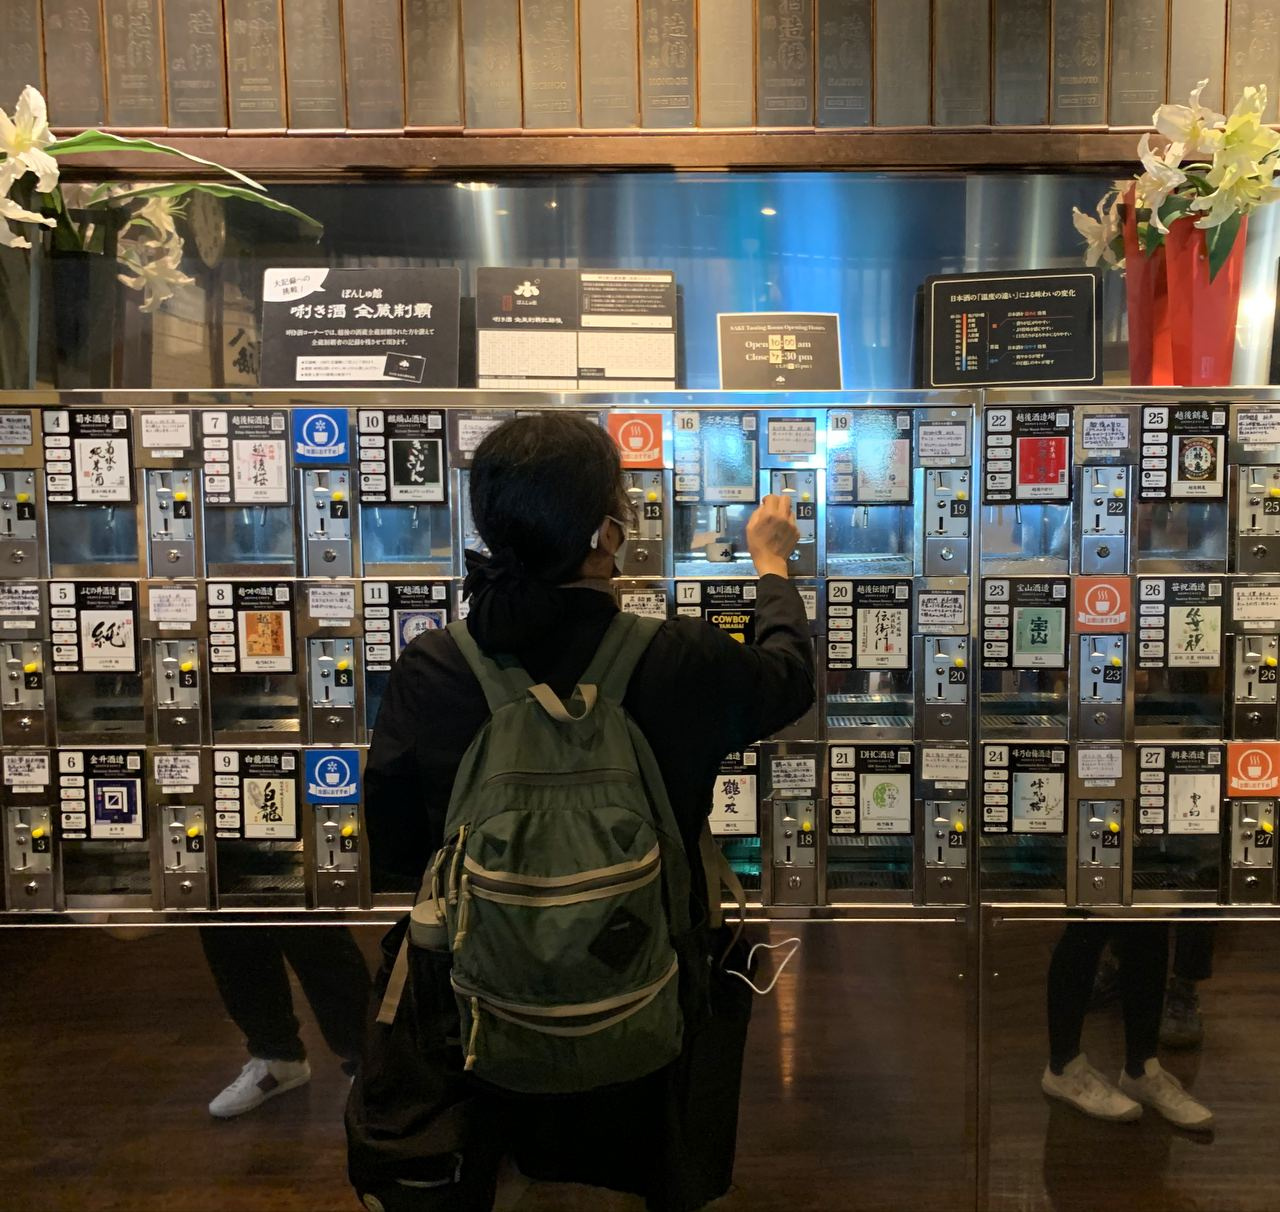 В «Понсюкане» — музее саке — на станции Ниигата можно попробовать сотни сортов саке. Напиток разливают специальные автоматы